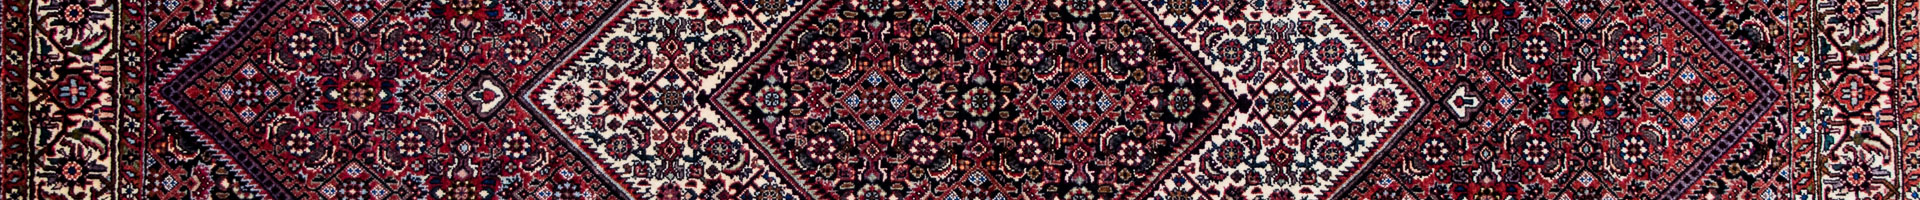 Bidjar Namdari Persian Carpet rug N1Carpet